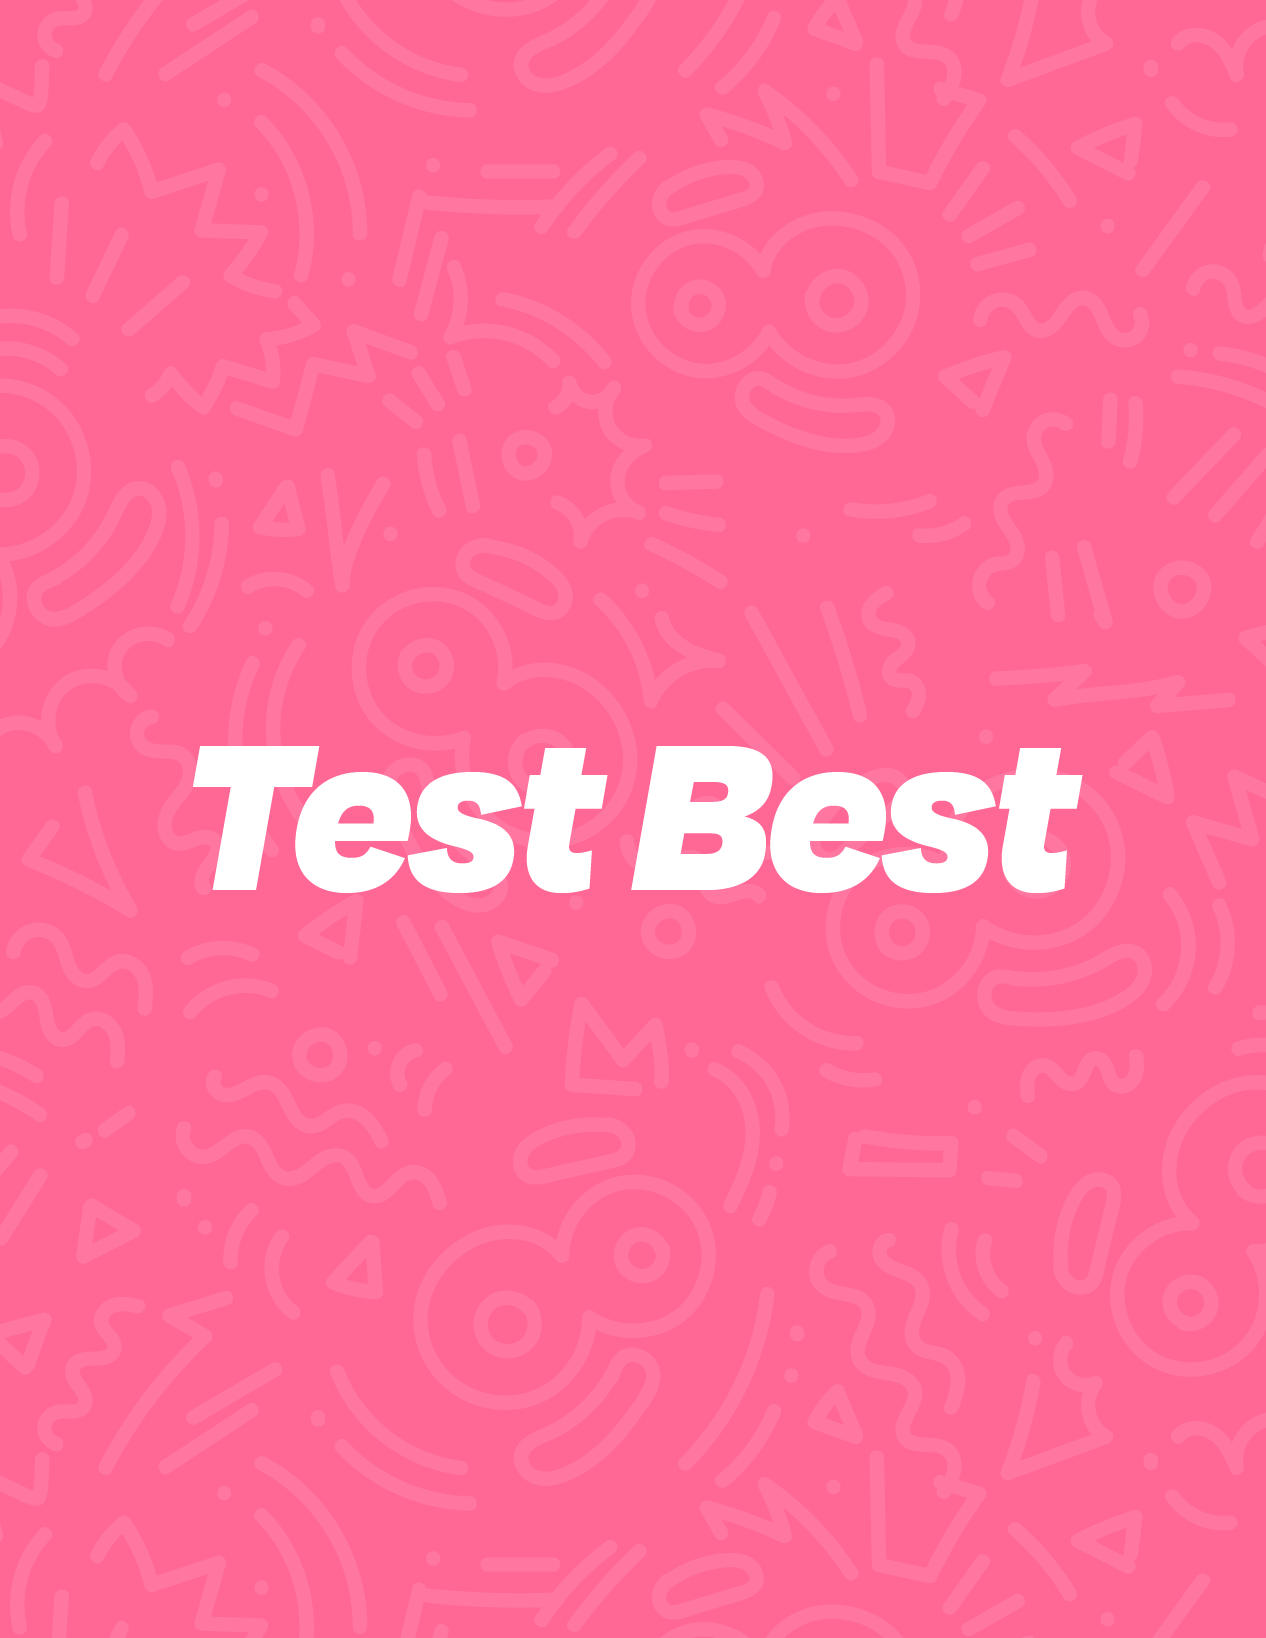 Test Best